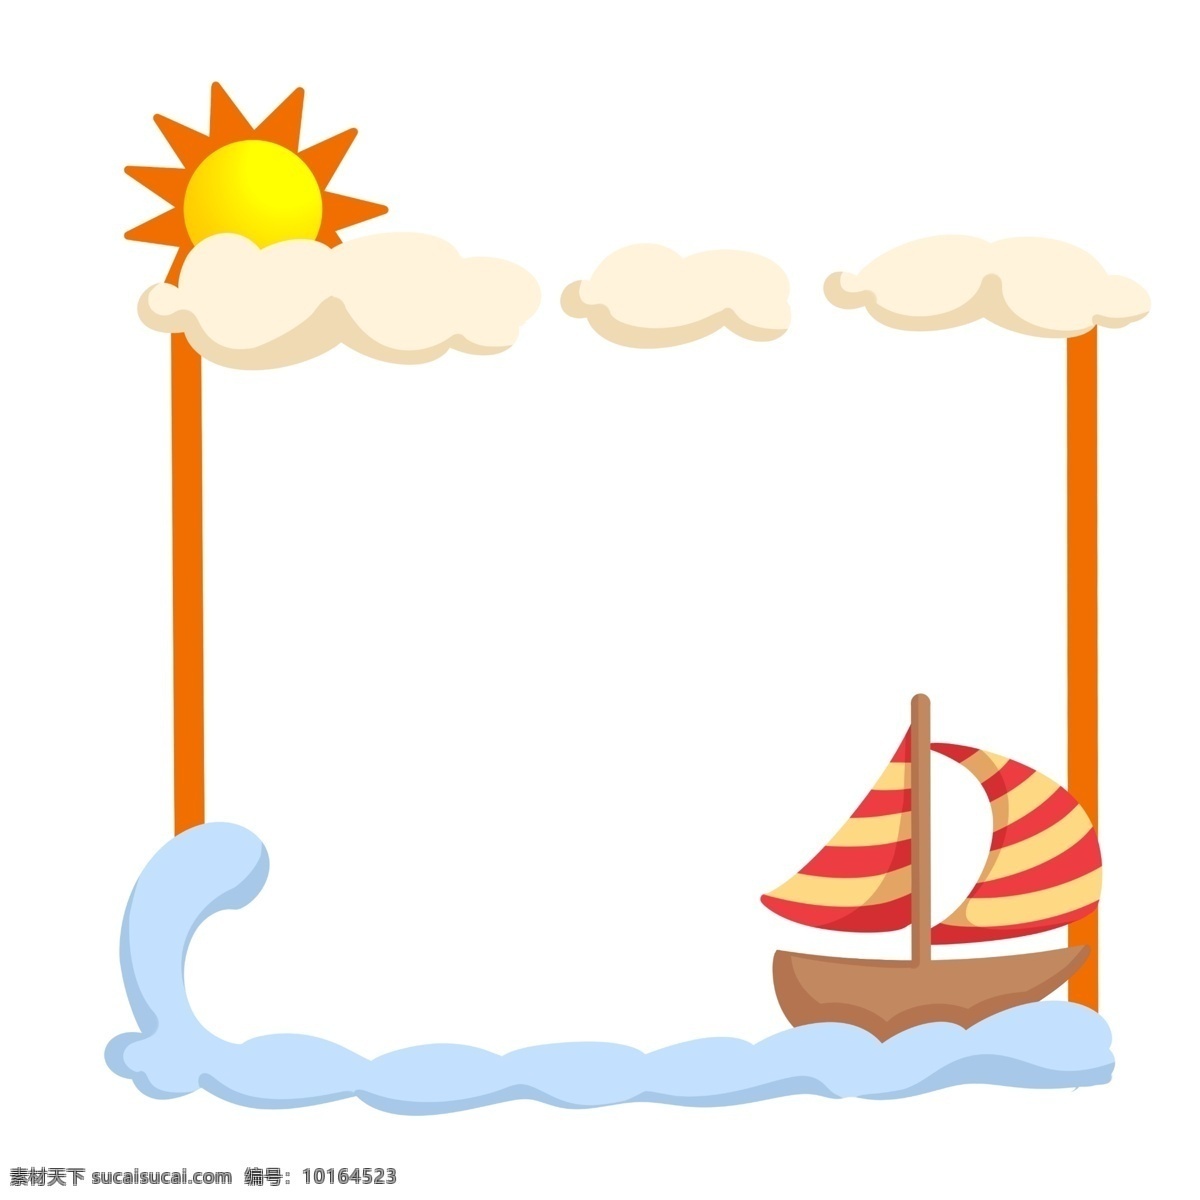 漂亮 帆船 边框 插画 漂亮的边框 帆船边框 太阳 白云 海浪 海洋边框 方形边框 可爱边框 船